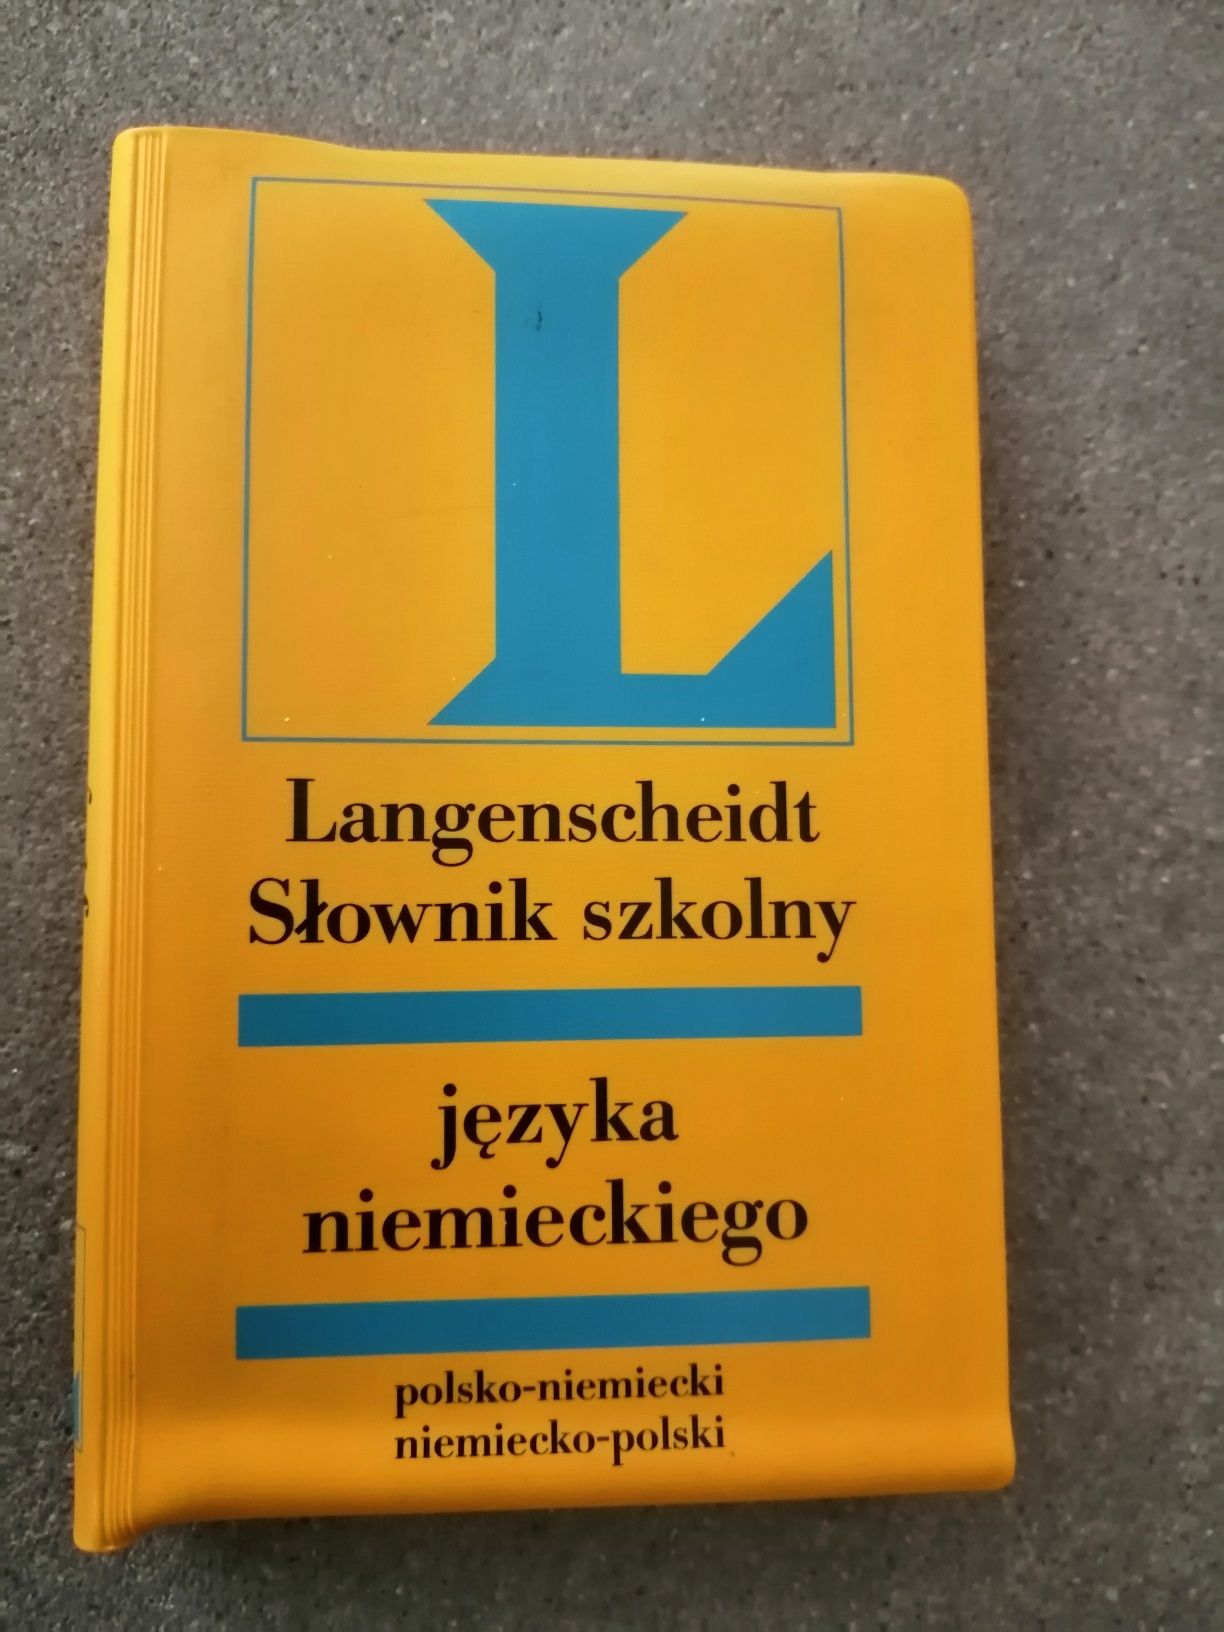 Słownik szkolny języka niemieckiego langenscheidt